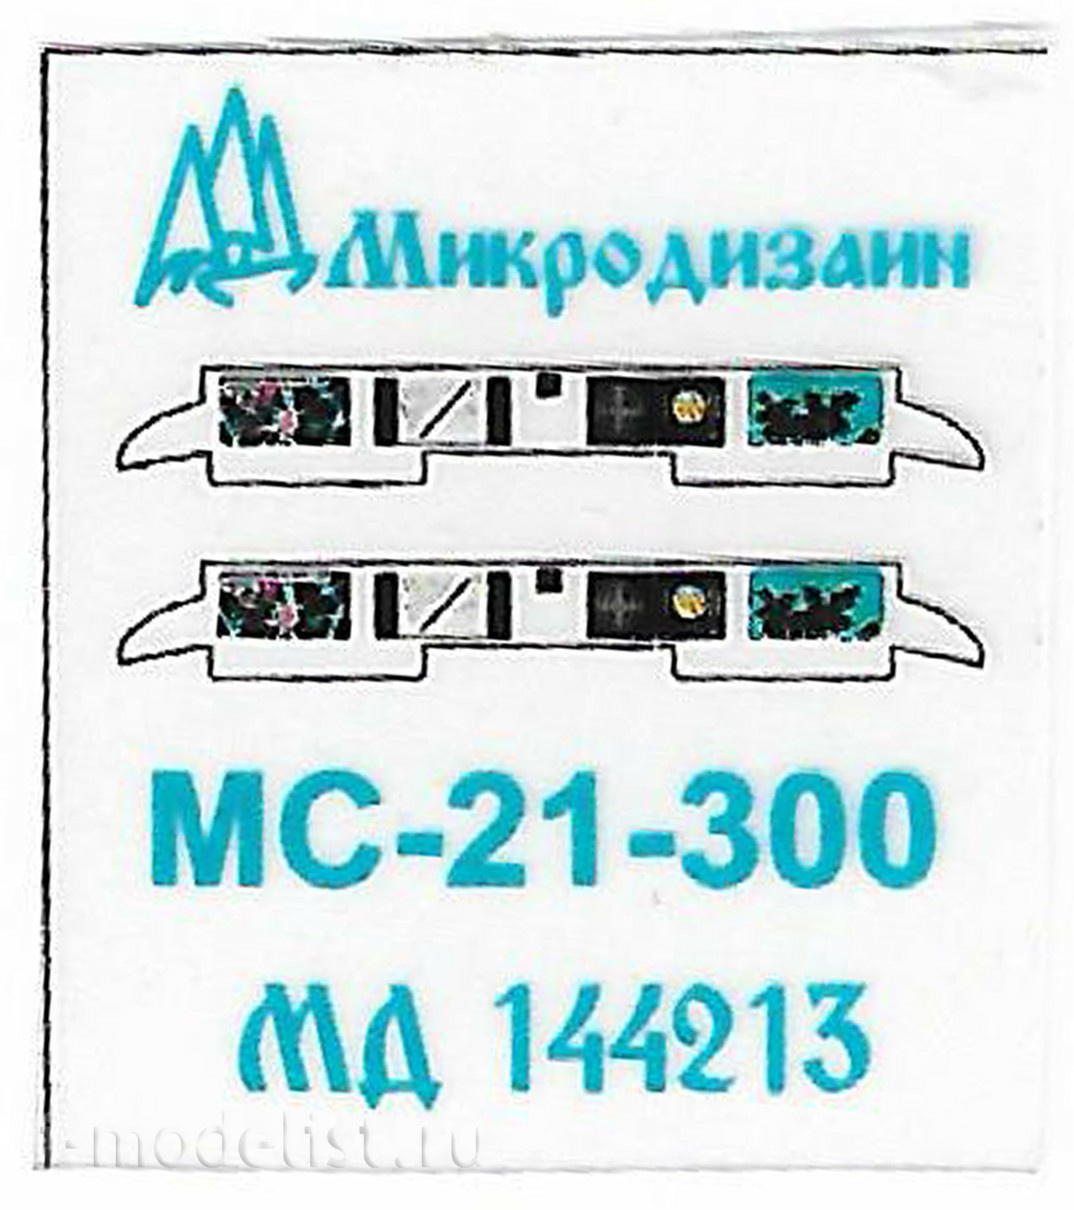 144213 Микродизайн 1/144 Набор фототравления для модели МС-21-300 от Звезды.